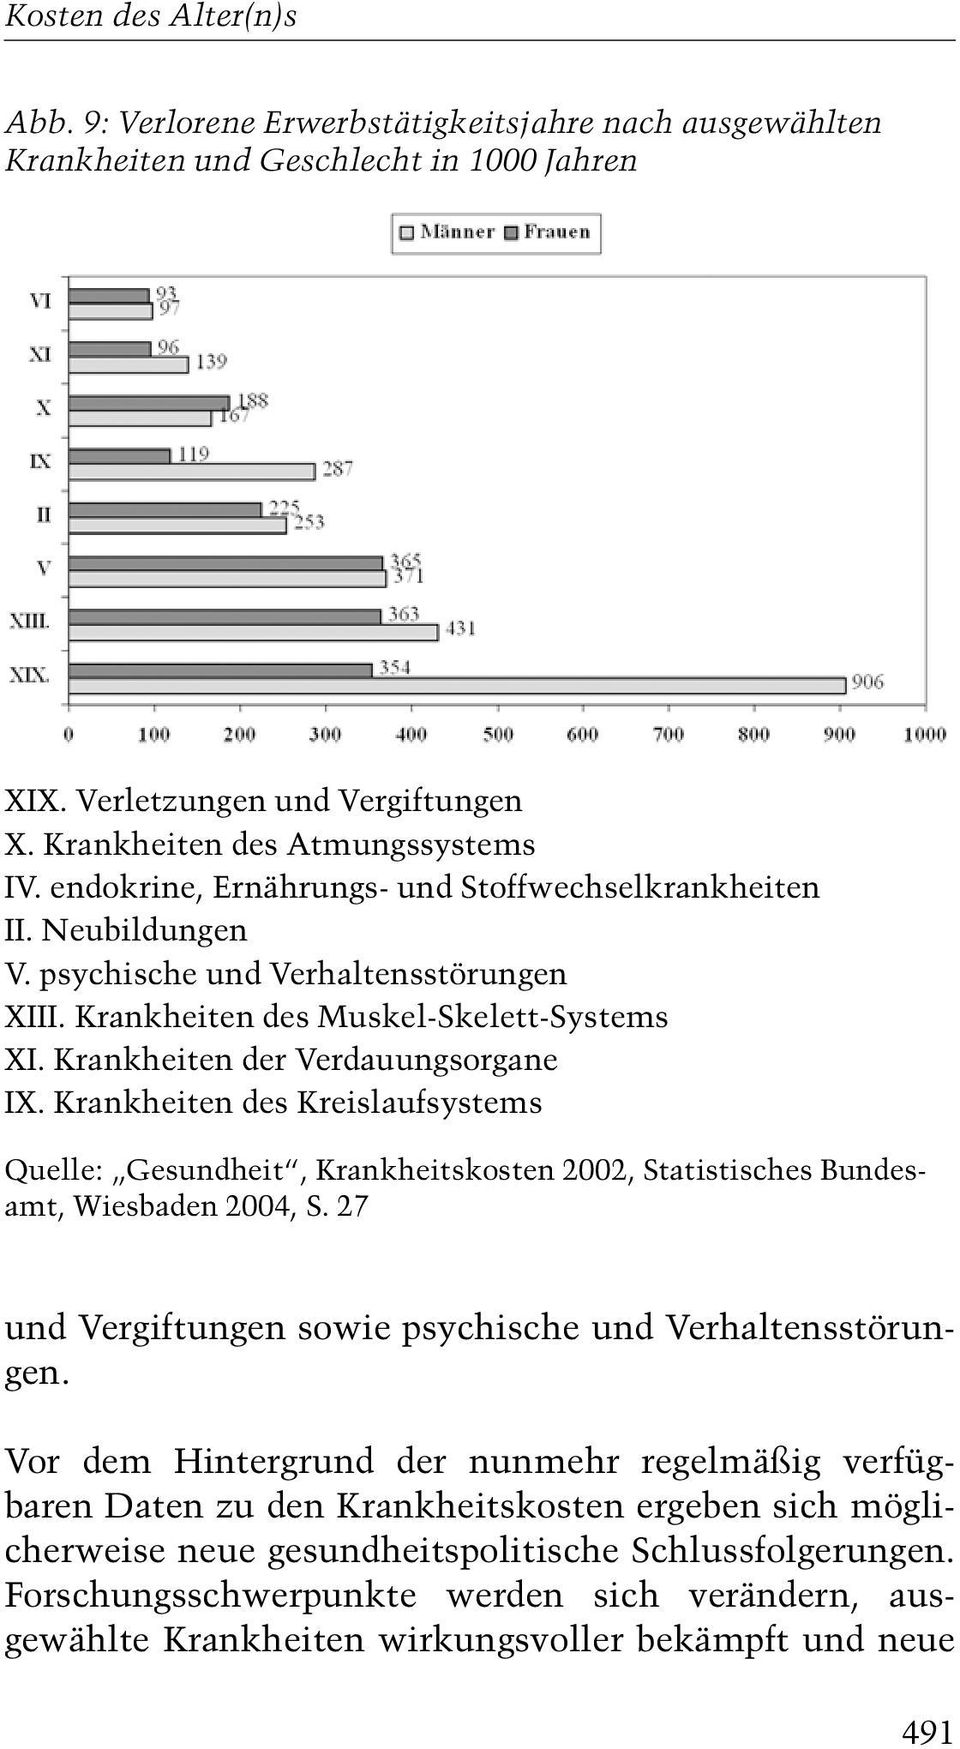 Krankheiten des Kreislaufsystems Quelle: ¹Gesundheitª, Krankheitskosten 2002, Statistisches Bundesamt, Wiesbaden 2004, S. 27 und Vergiftungen sowie psychische und Verhaltensstörungen.